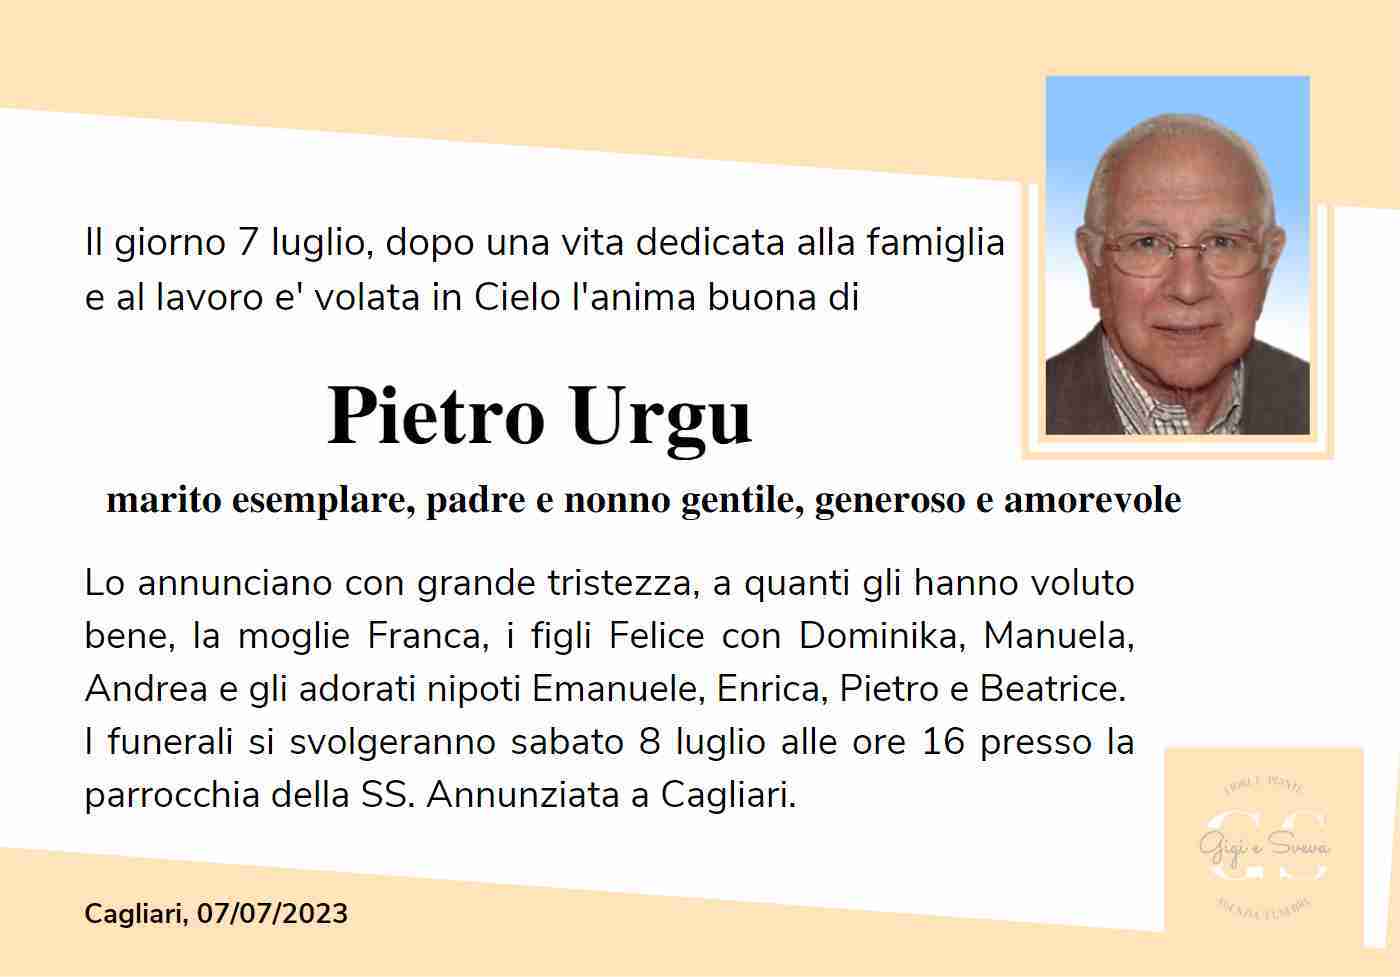 Pietro Urgu